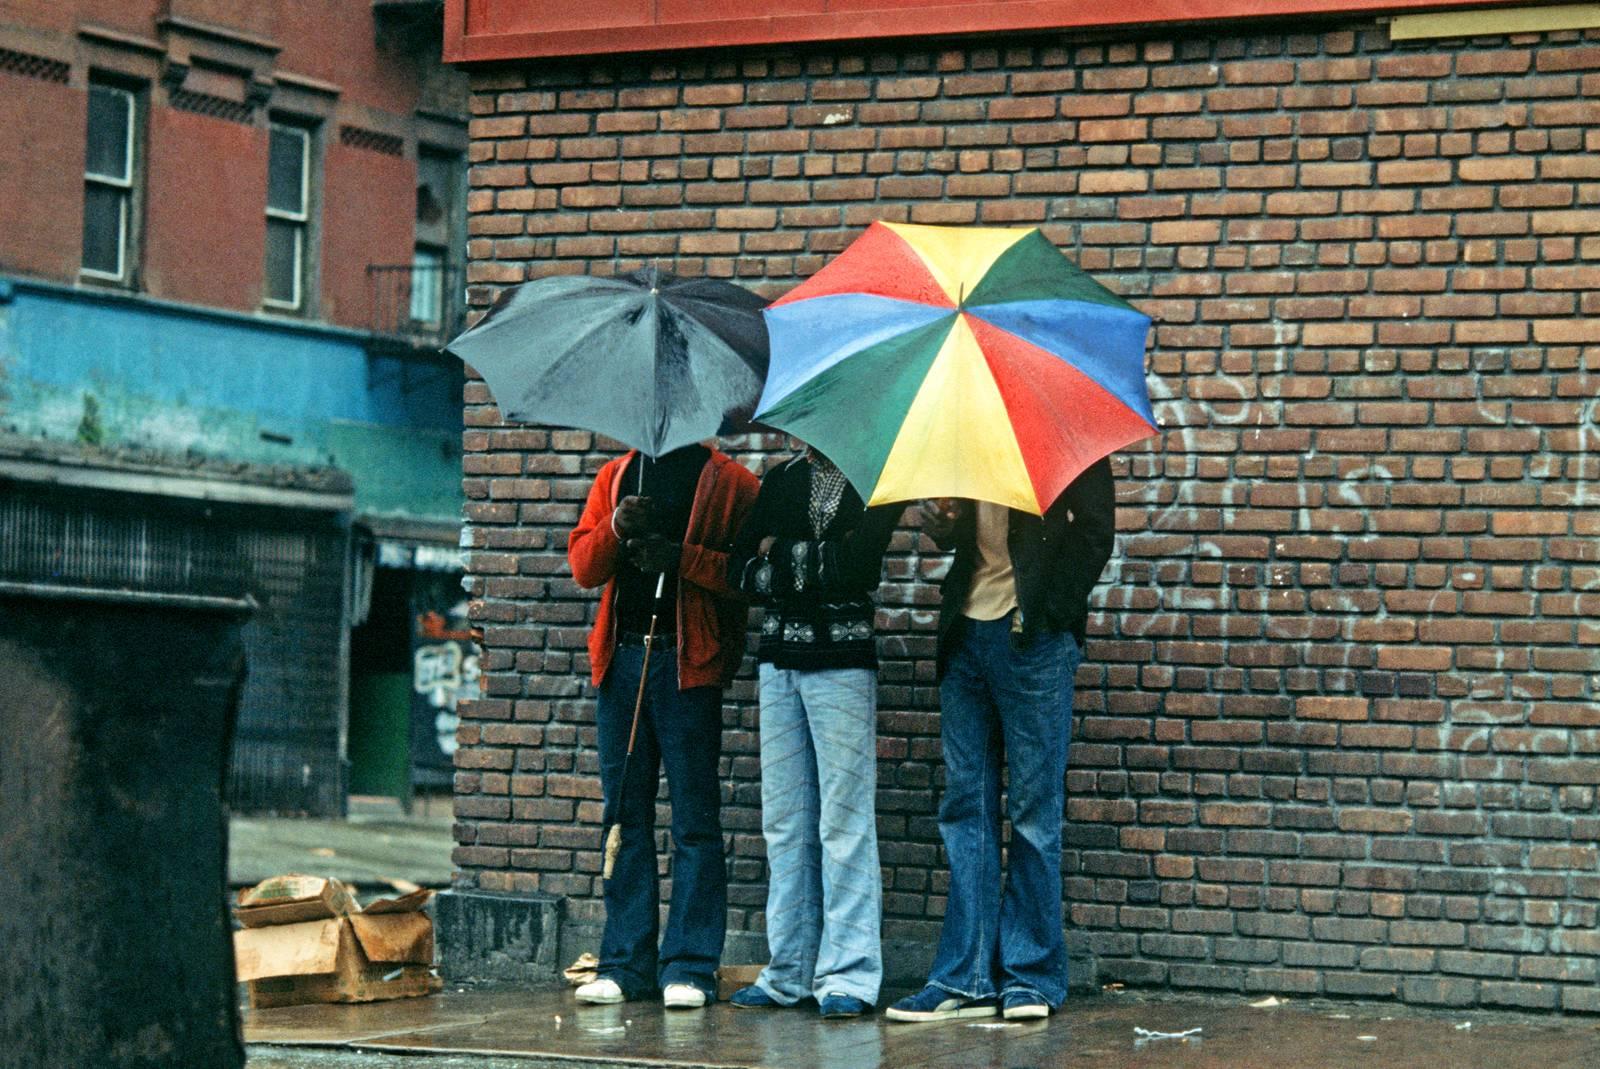 Alain Le Garsmeur Landscape Photograph - Harlem Umbrellas